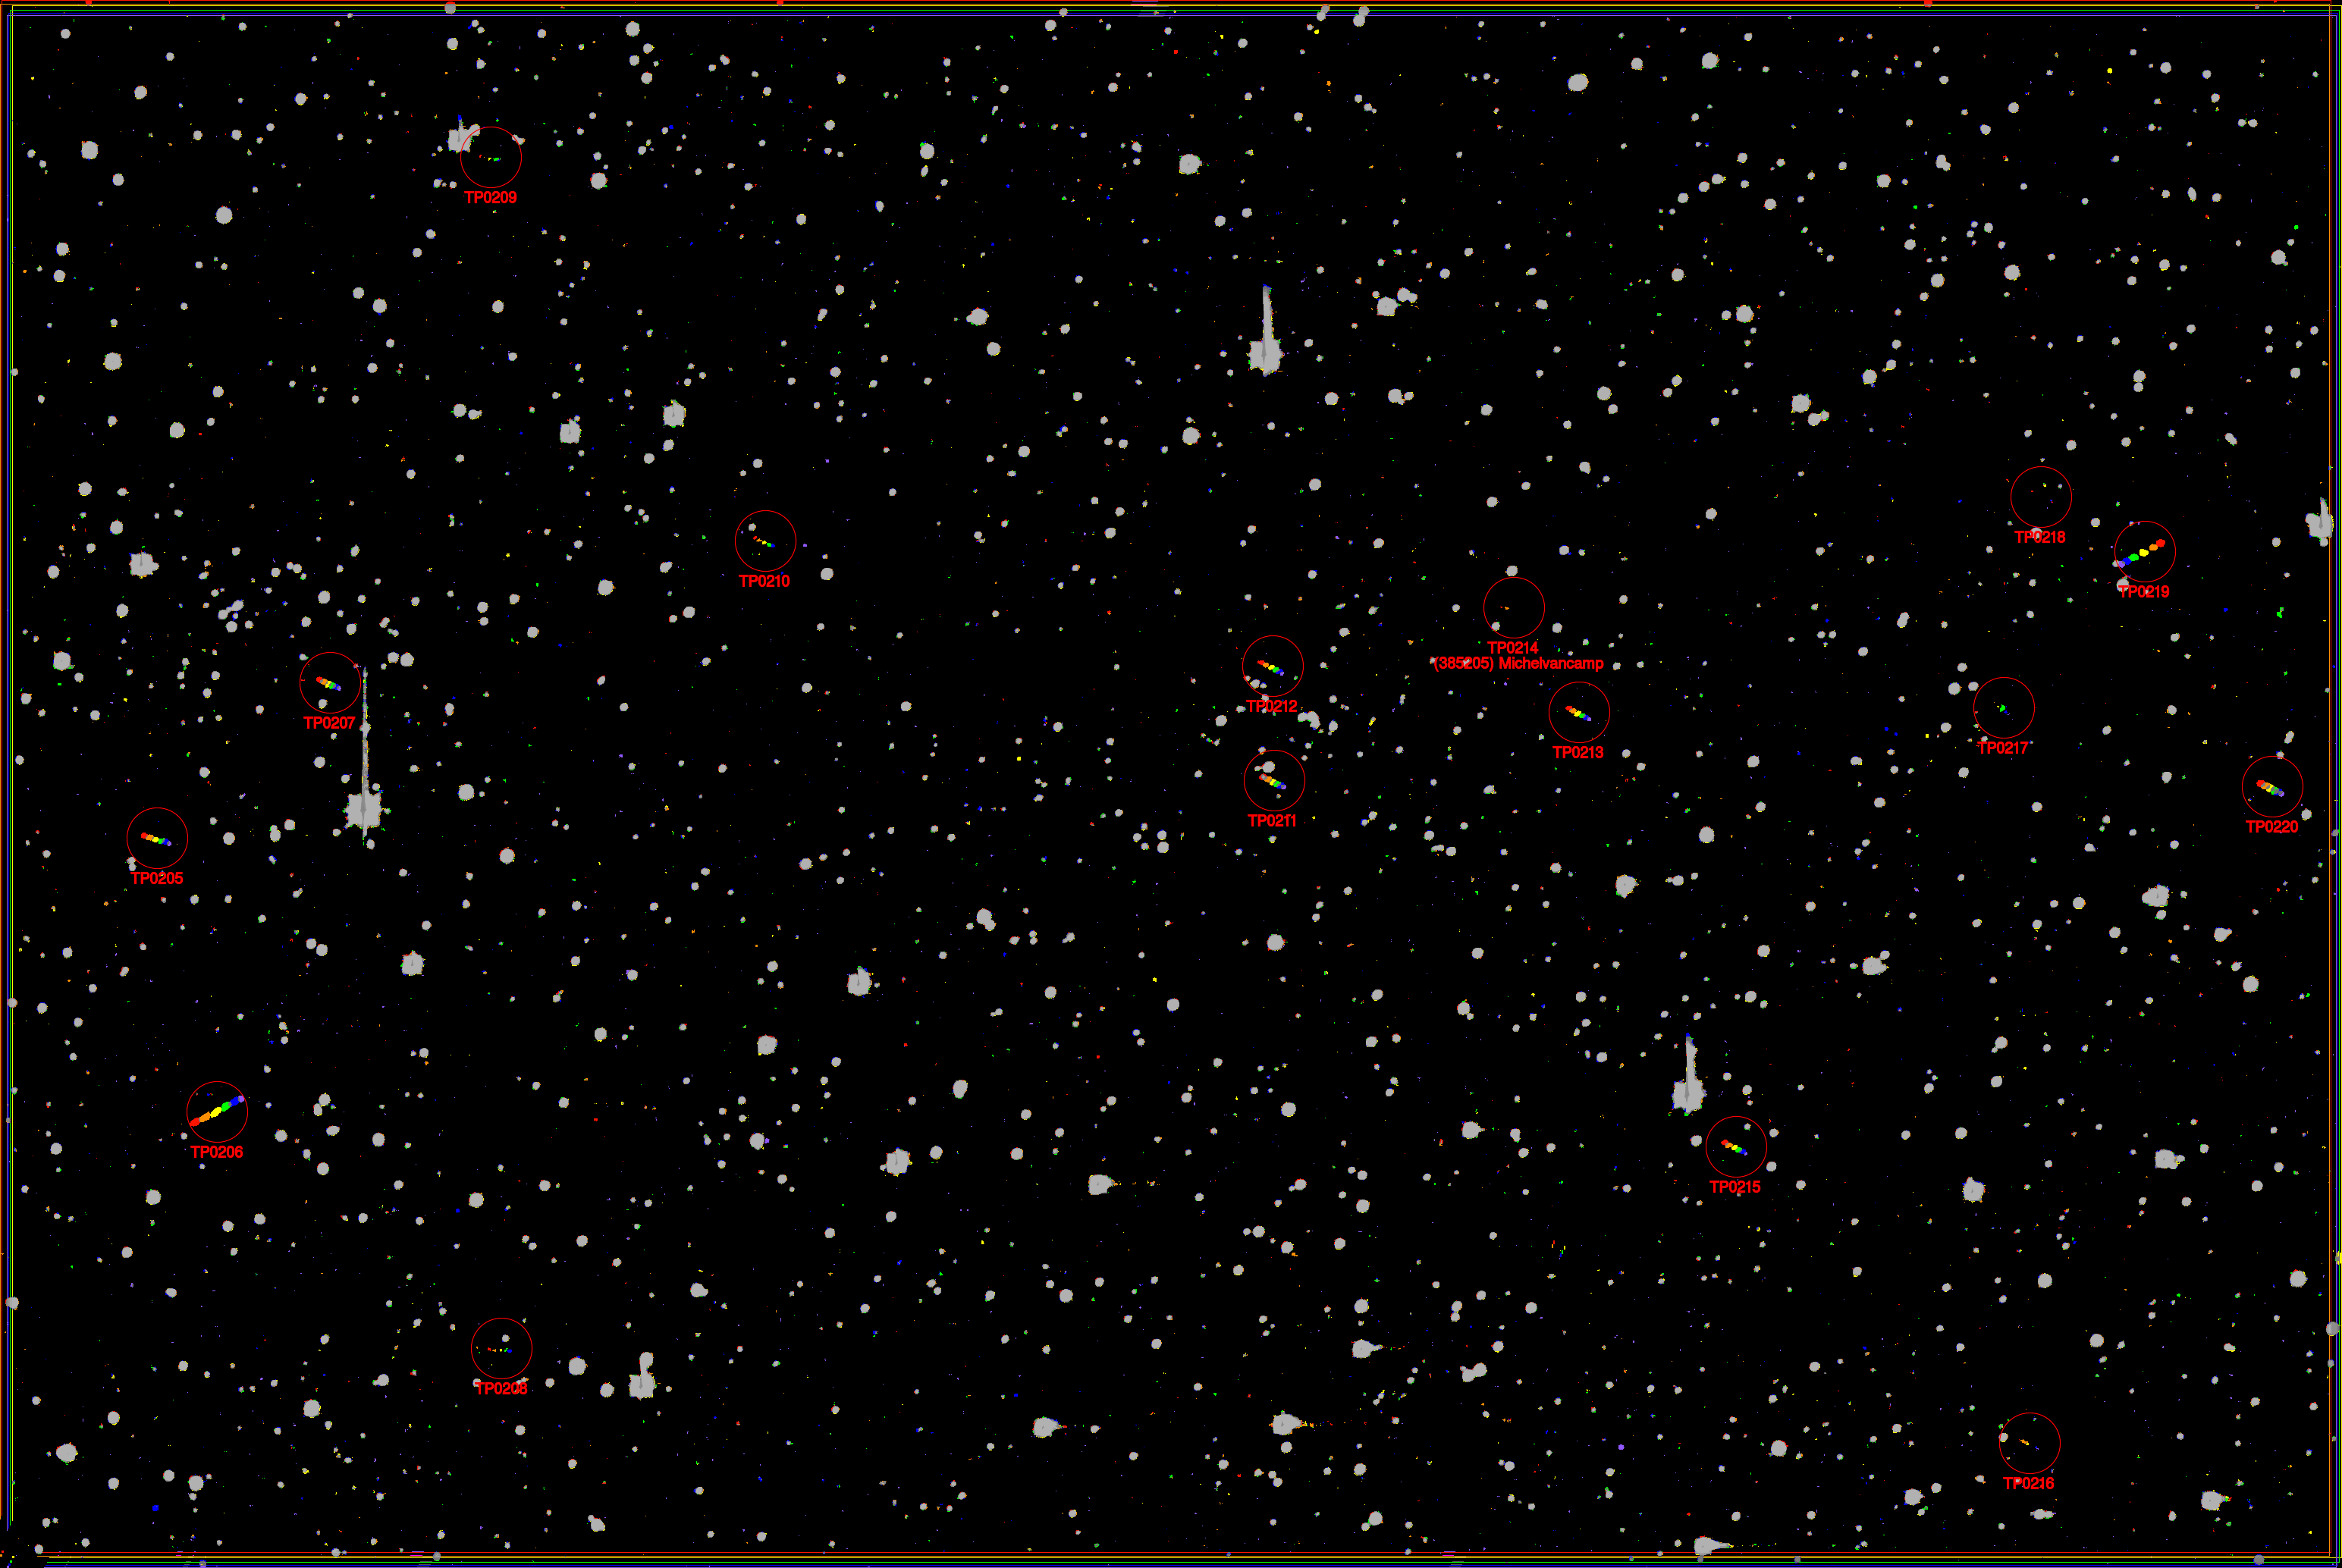 Figuur 6: Compilatie van zes opeenvolgende CCD-beelden die in de nacht van 20 op 21 september 1999 in Ukkel genomen werden door Thierry Pauwels. Op het beeld zijn 16 asteroïden te zien, wat het grootste aantal is dat ooit waargenomen werd in een enkel beeldveld van de CCD-camera aan de Ukkelse Schmidt-telescoop. Van die 16 zijn er 6 tot 8 ontdekt in Ukkel. De asteroïde (385205) Michelvancamp staat hier geannoteerd als “TP0214". Asteroïden verschijnen als een parelsnoer in regenboogkleuren, terwijl sterren als grijze stippen en beeldruis als eenkleurige stippen verschijnen.